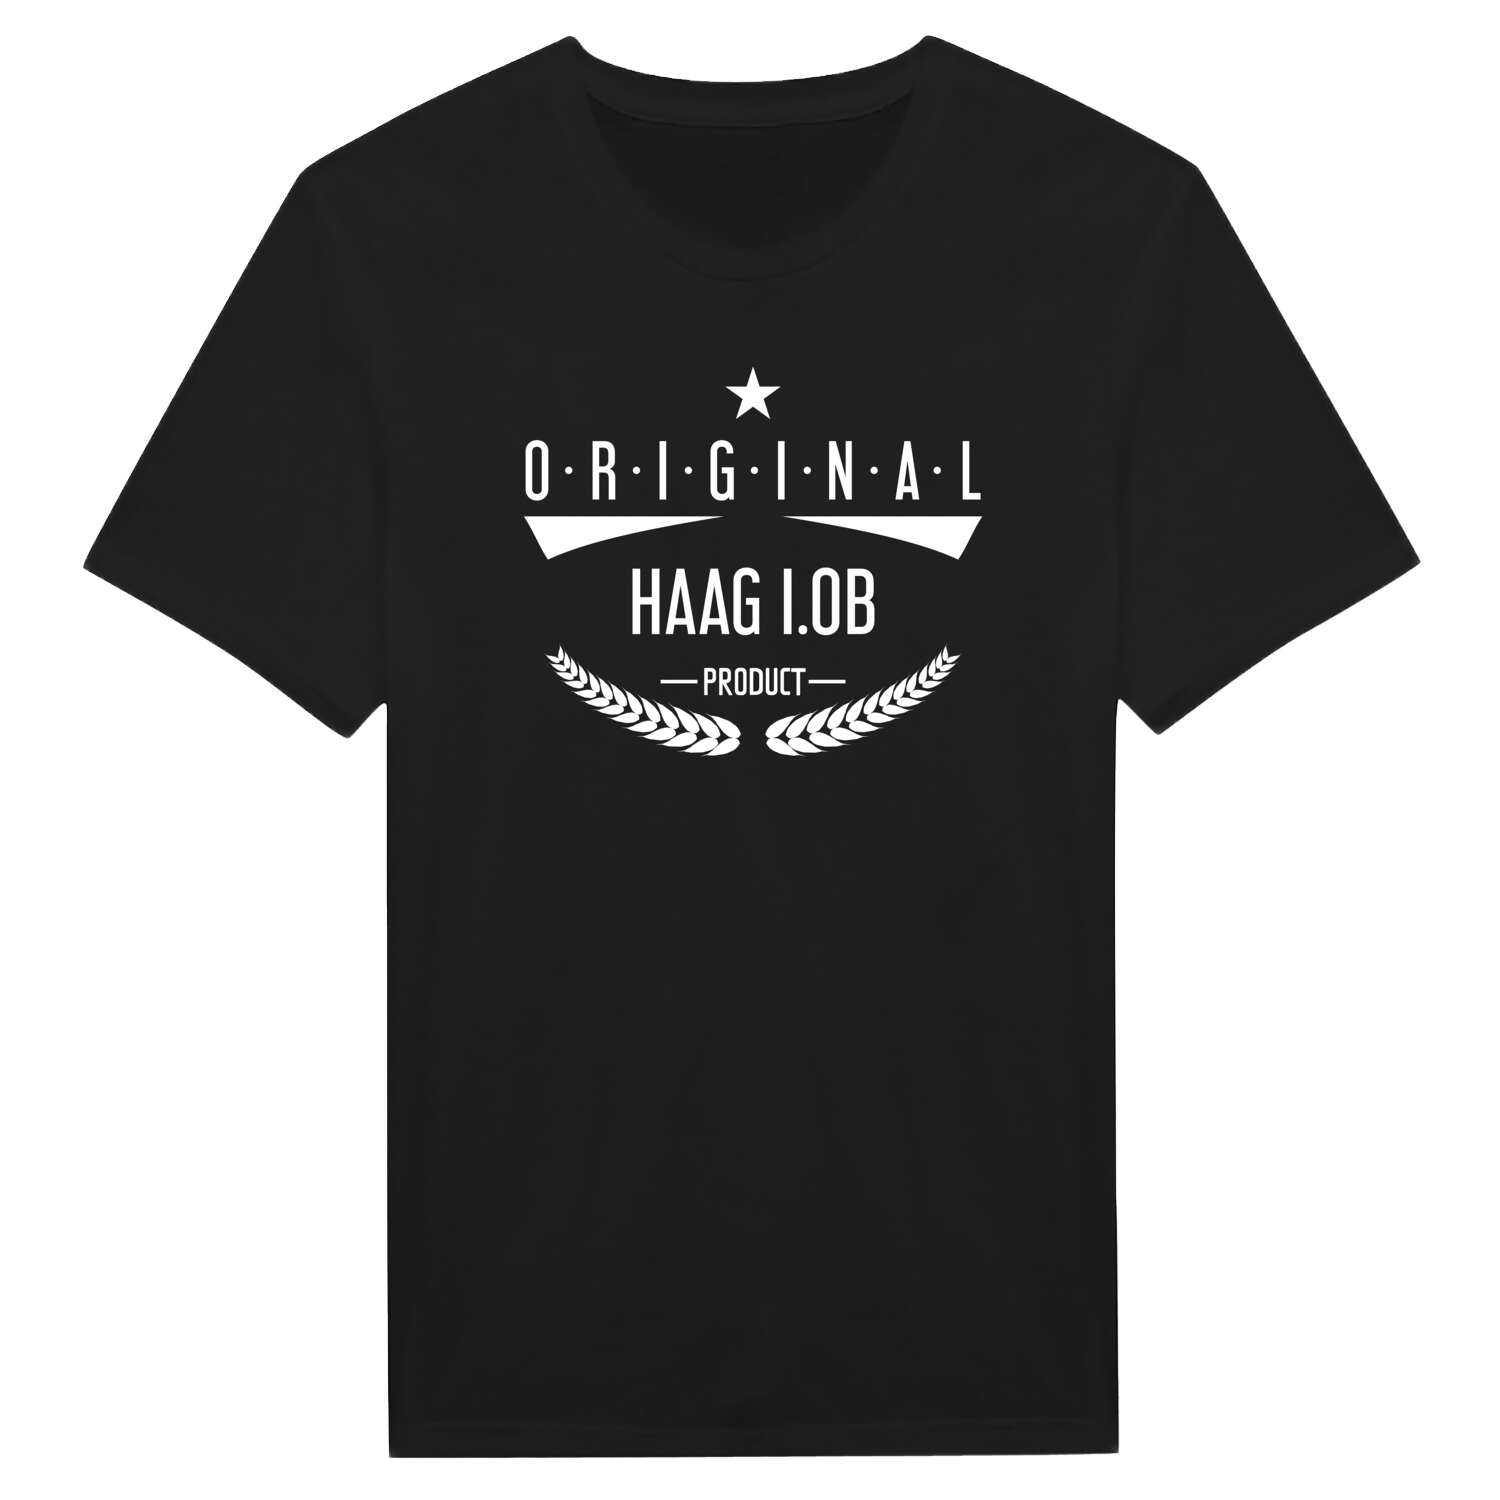 Haag i.OB T-Shirt »Original Product«